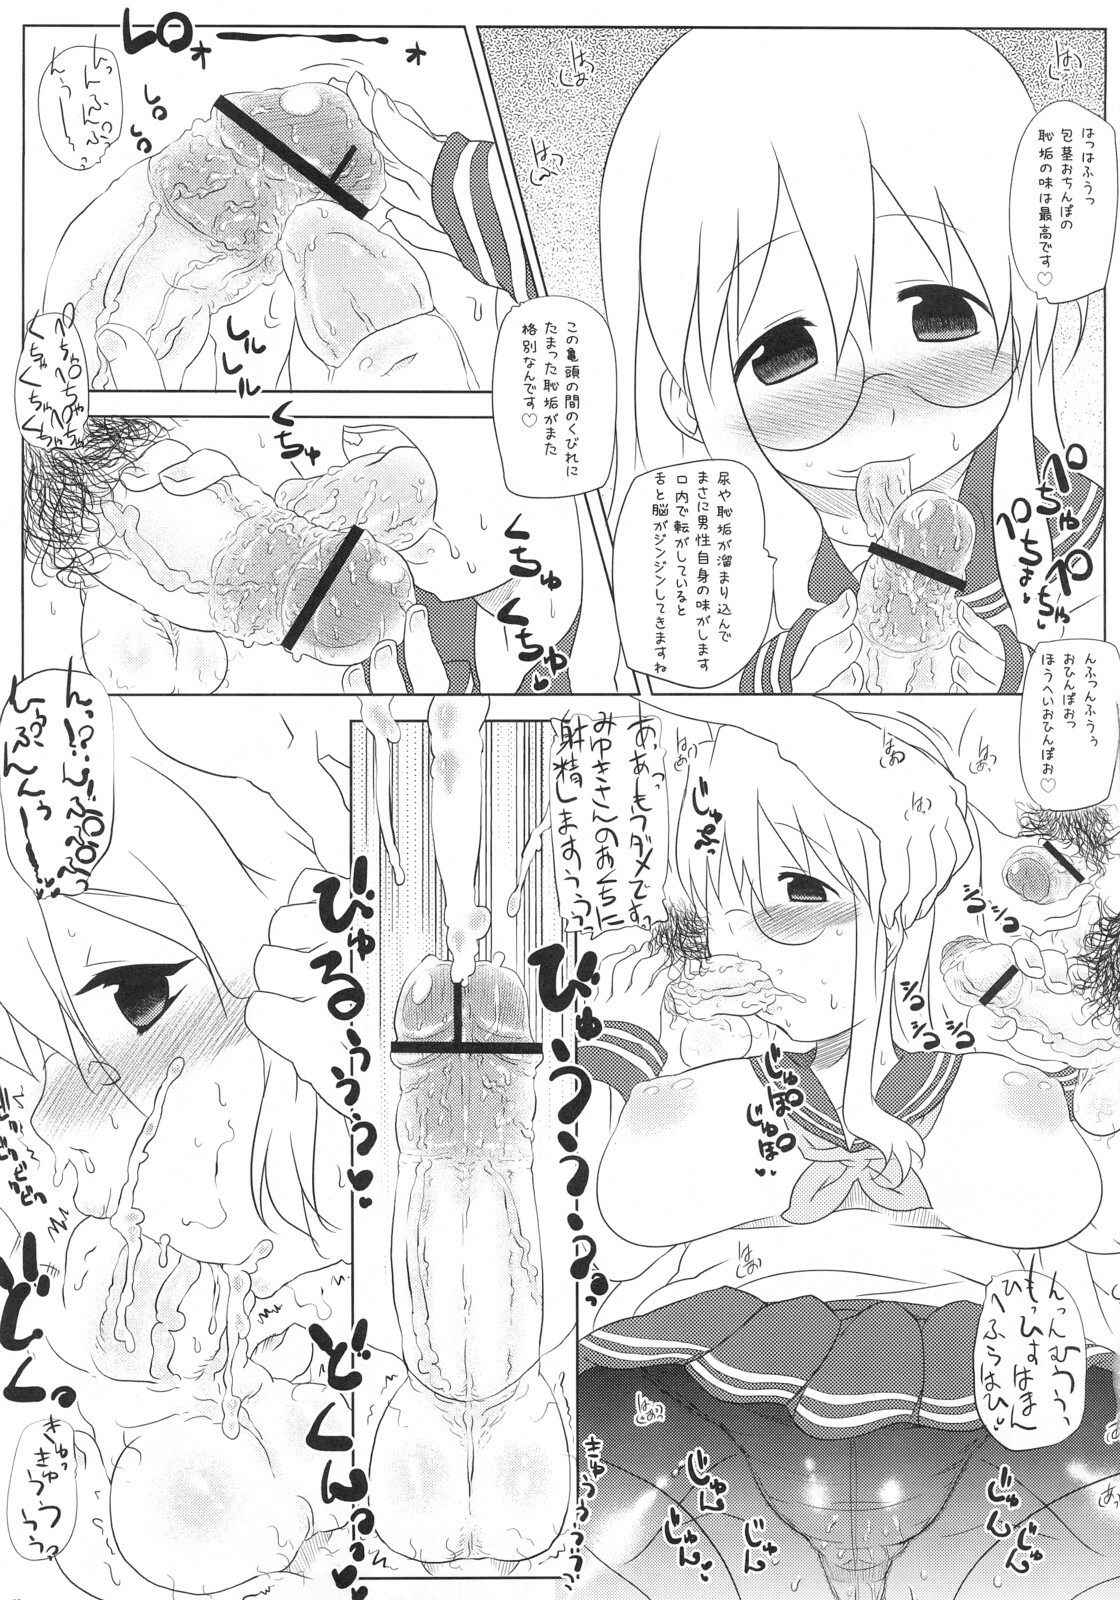 [Takatobiya] Motteke! Panty Stocking (Lucky Star) page 6 full